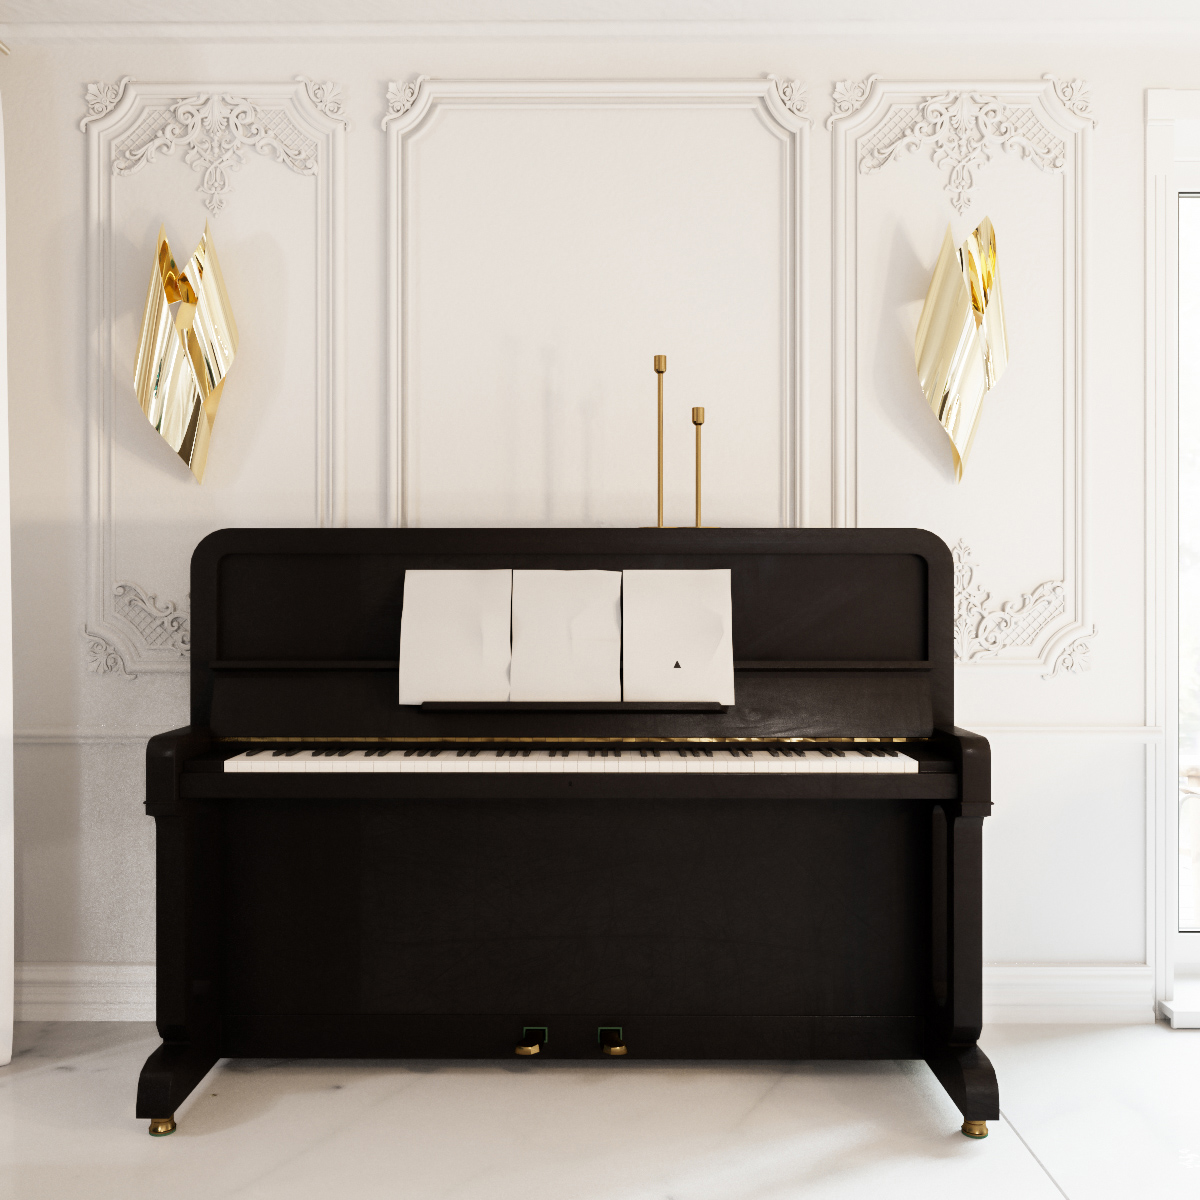 Пианино в классическом интерьере